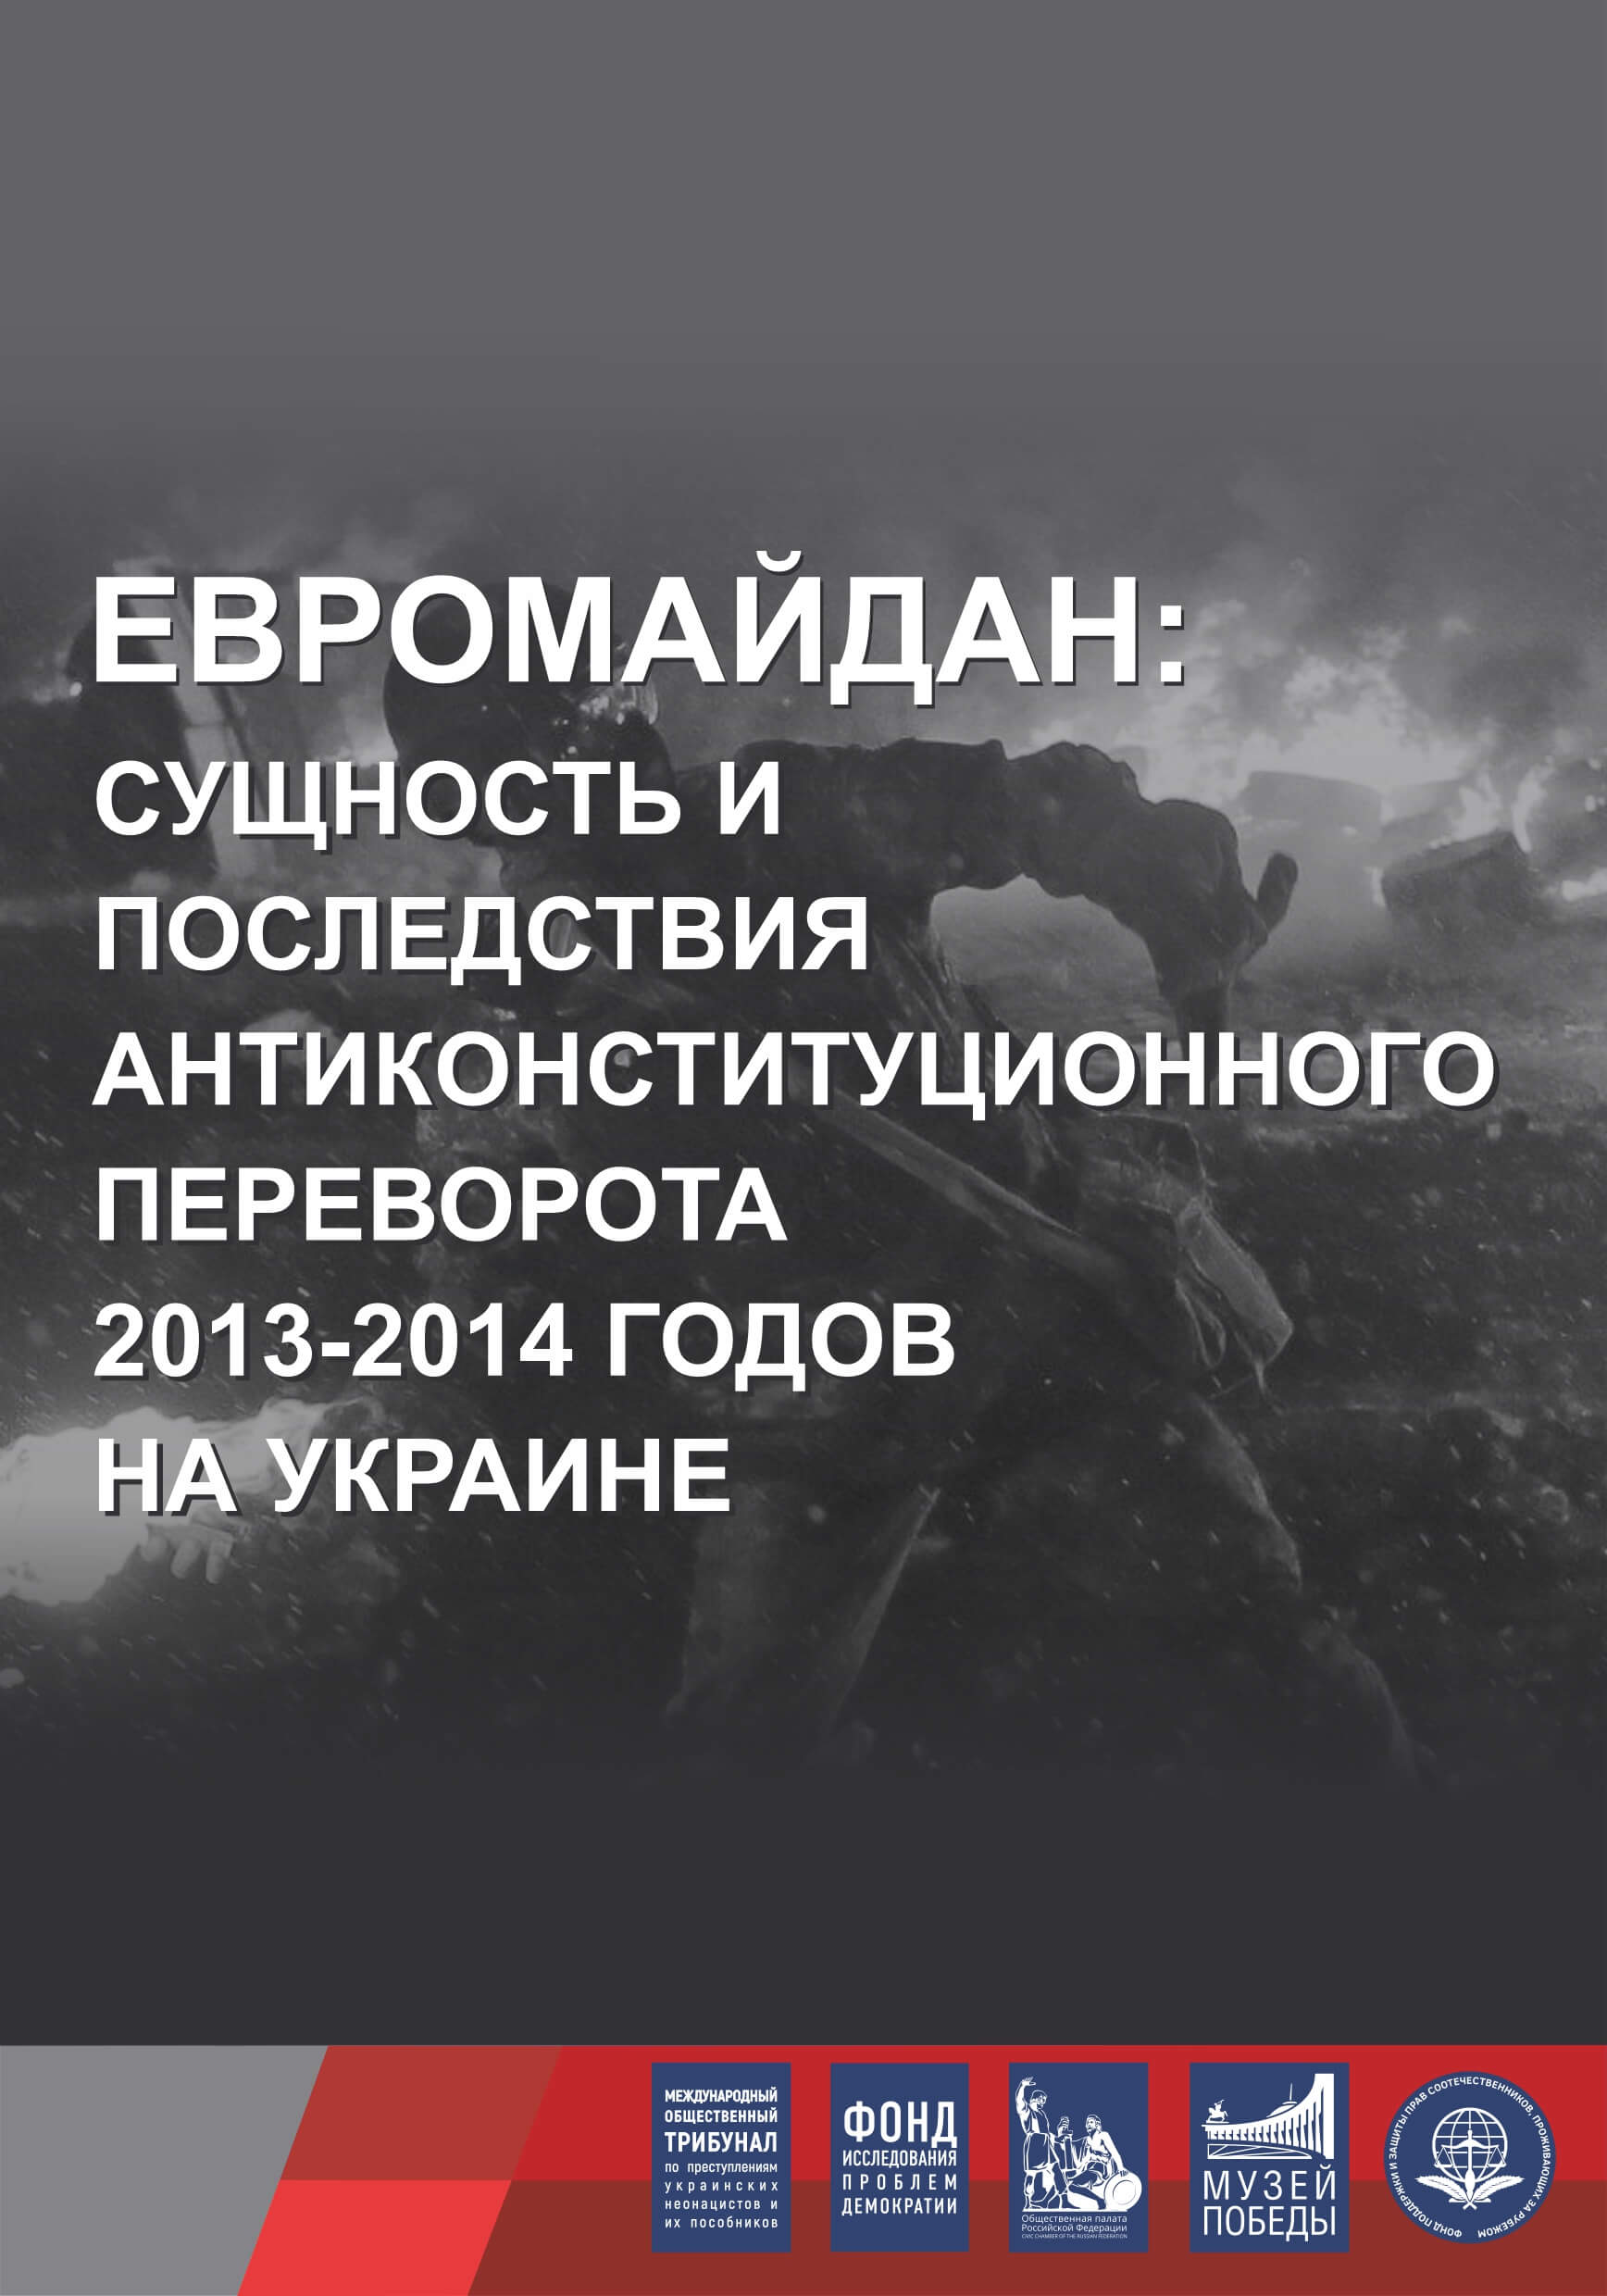 Евромайдан: сущность и последствия антиконституционного переворота 2013-2014 годов на Украине